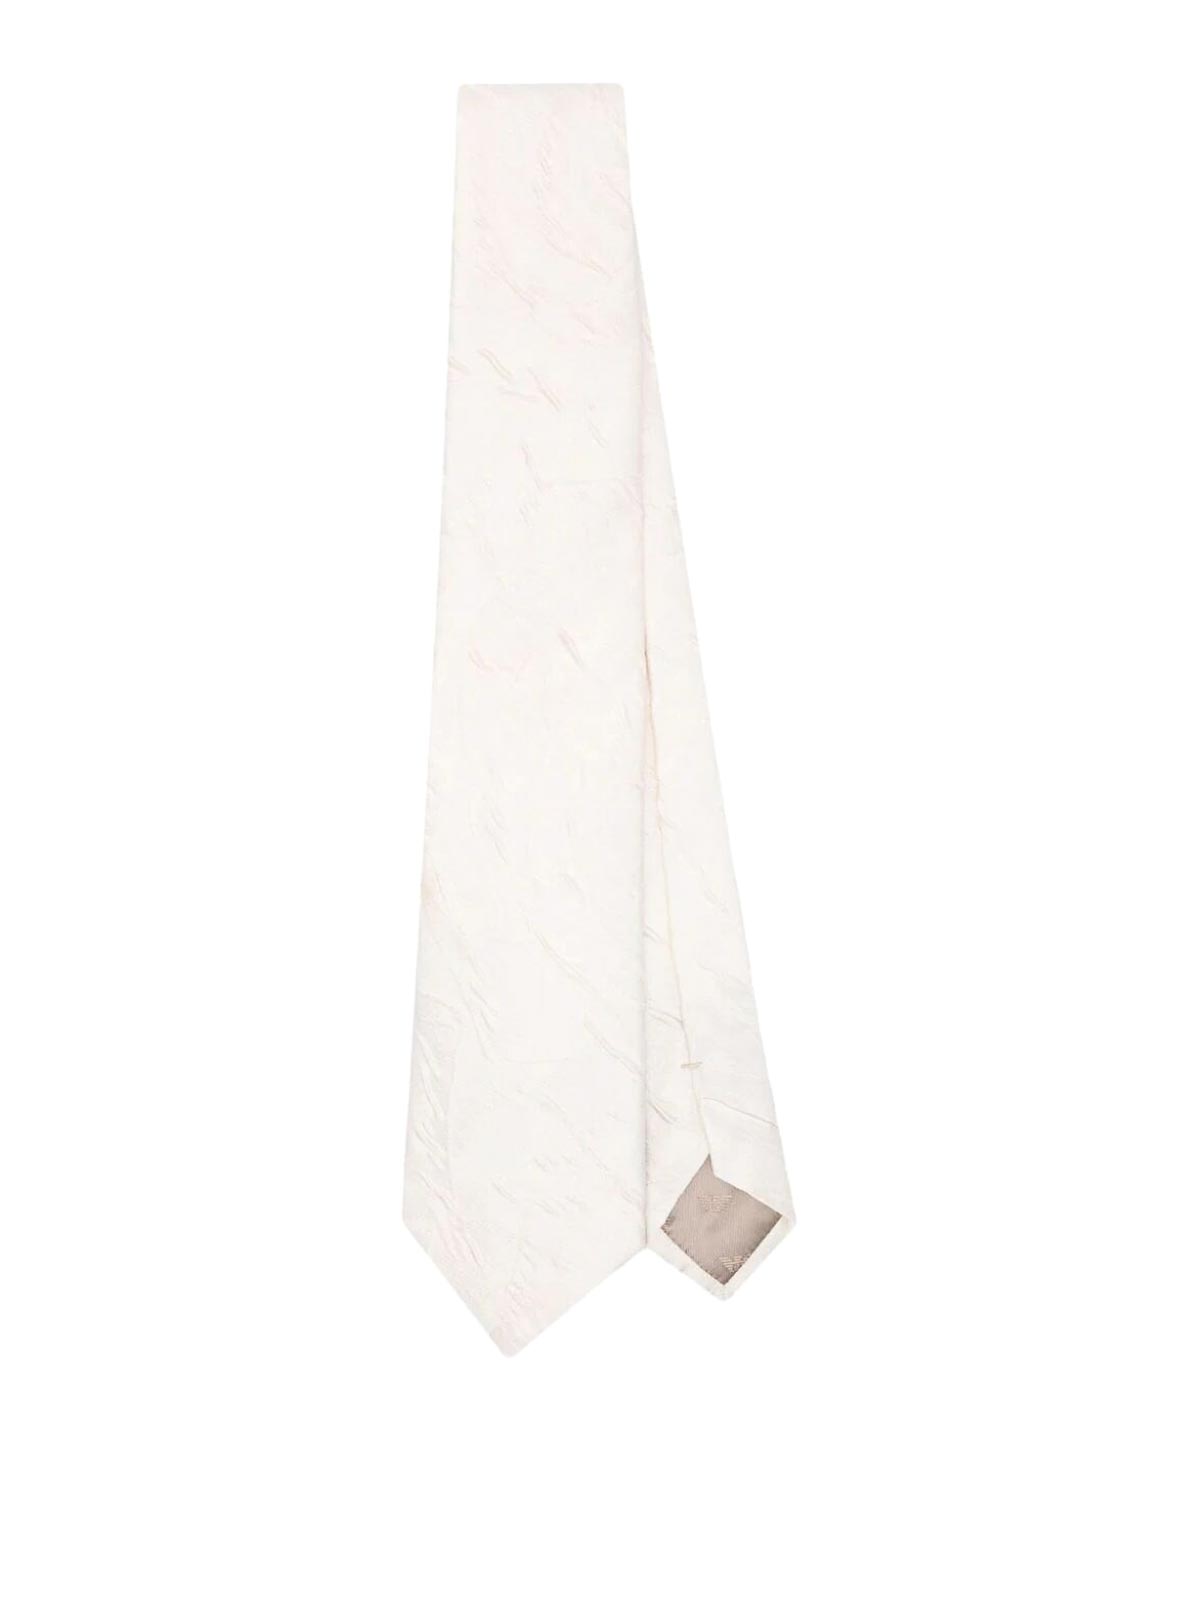 Emporio Armani Woven Jacquard Tie In White